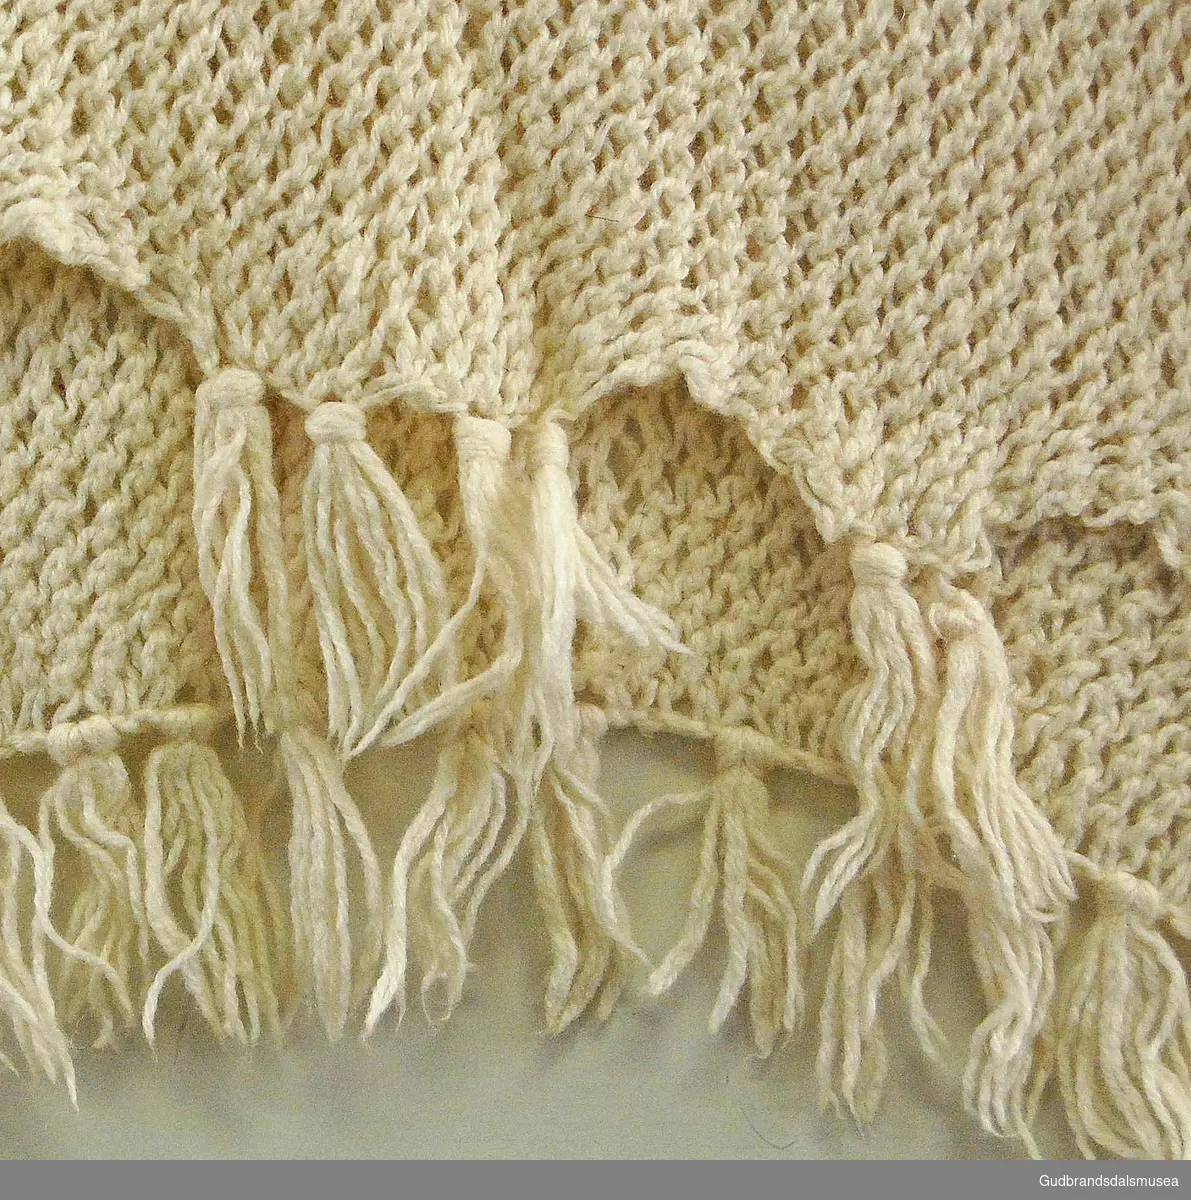 Knyttet/strikket i hvittbeige ull, med knyttede frynser i endene. Bredt skjerf, kan lett utvides. I rutetmønster; skråstilte løkker langs hele skjerfet.